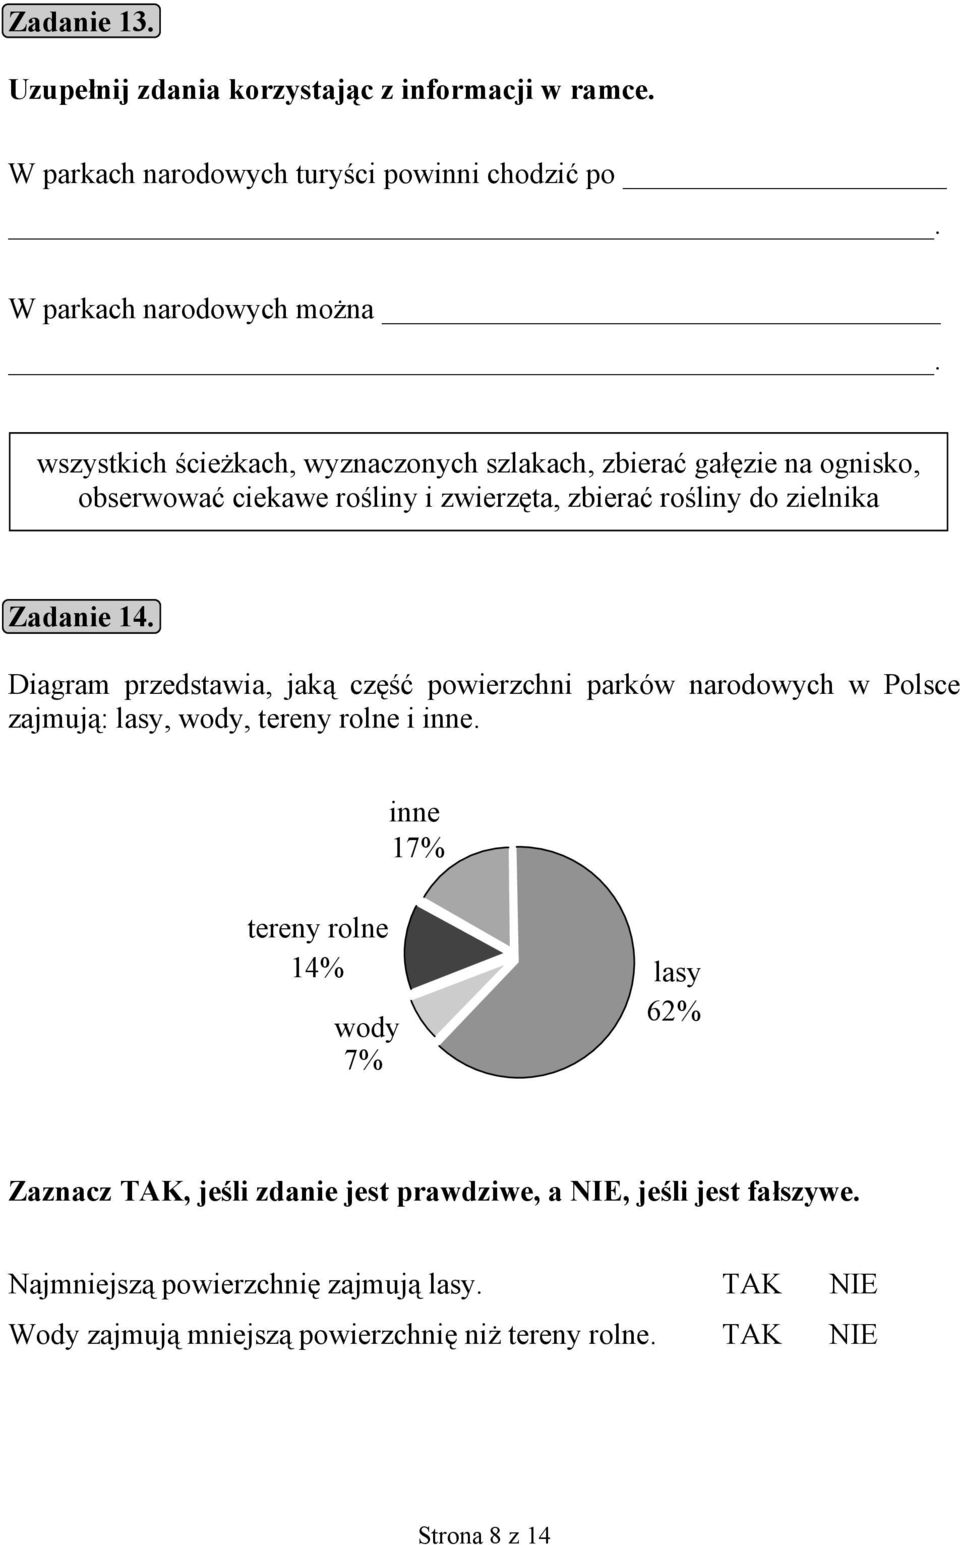 Diagram przedstawia, jaką część powierzchni parków narodowych w Polsce zajmują: lasy, wody, tereny rolne i inne.